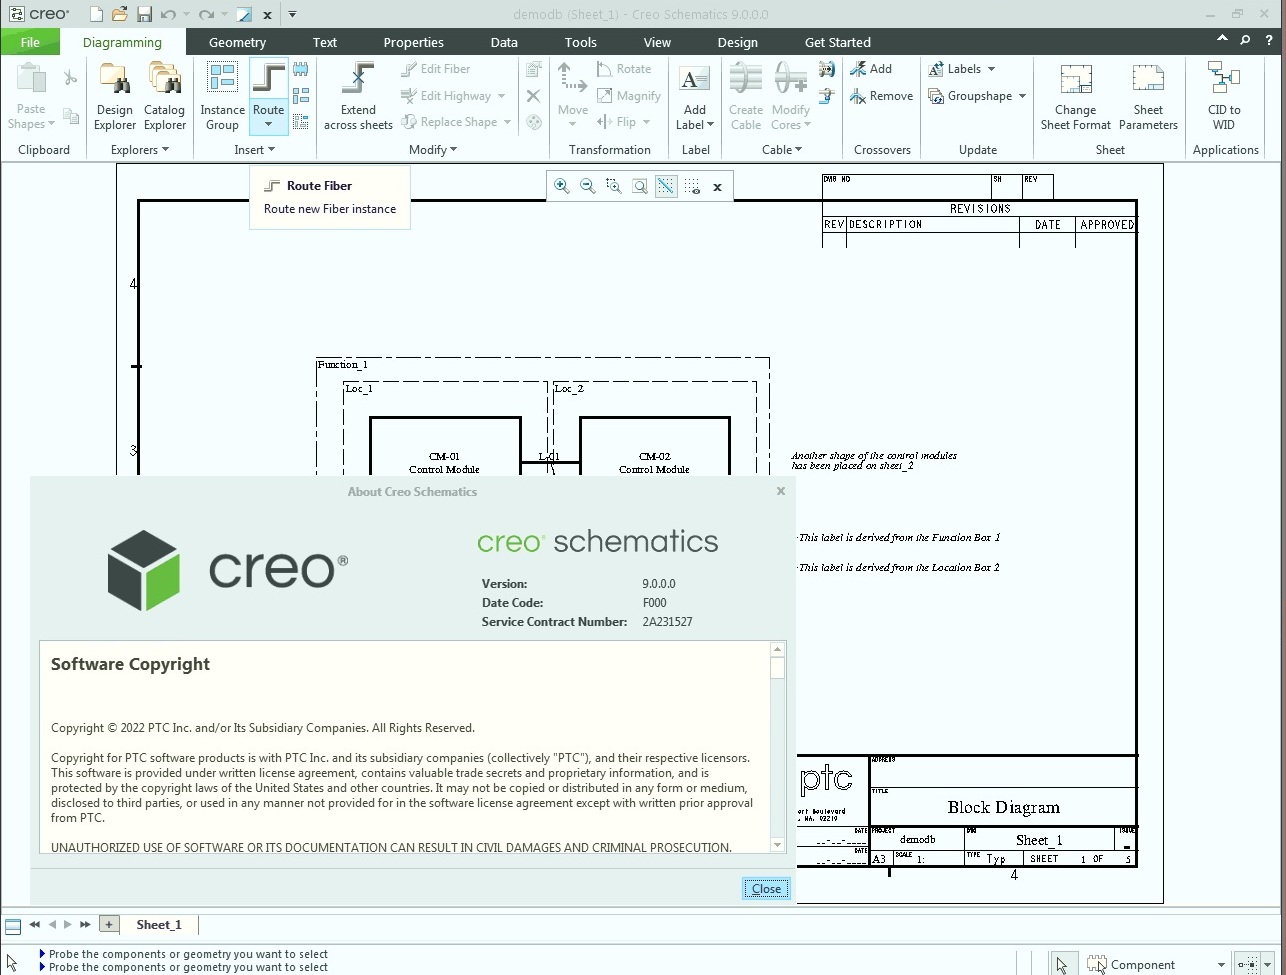 Working with PTC Creo Schematics 9.0.0.0 Win64 full